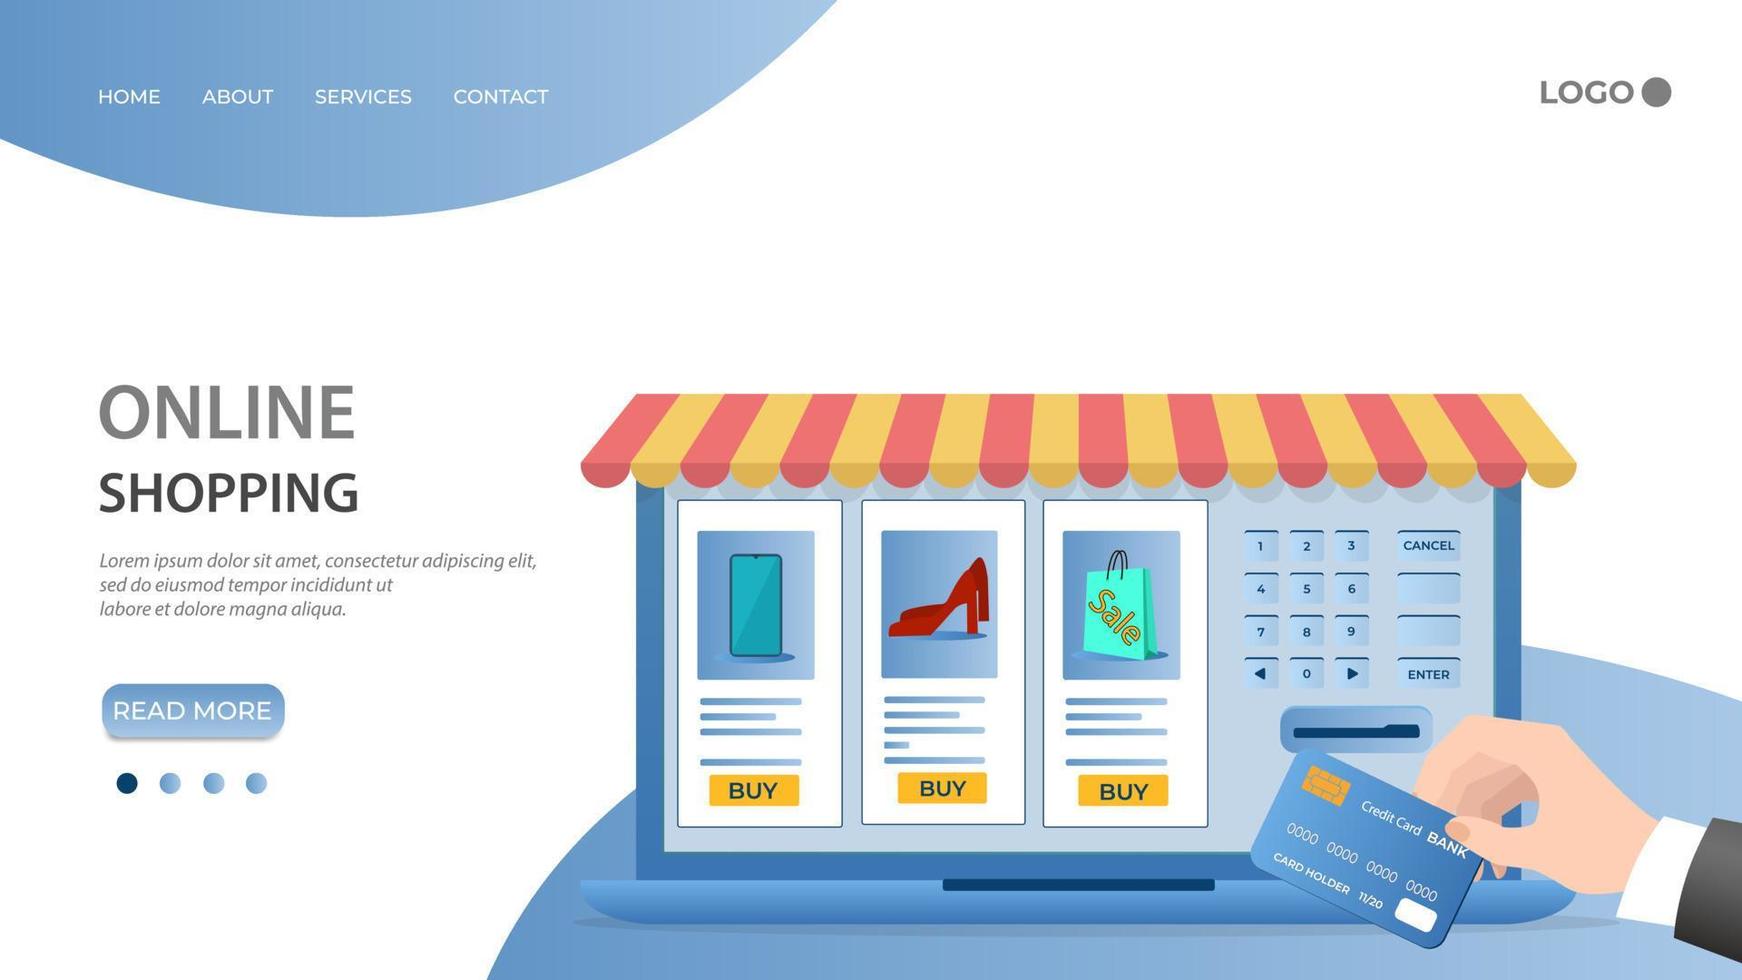 tienda en línea.la gente usa una tarjeta de crédito para hacer compras en una tienda en línea.el concepto de comercio en línea.ilustración vectorial plana.la plantilla de la página de inicio. vector